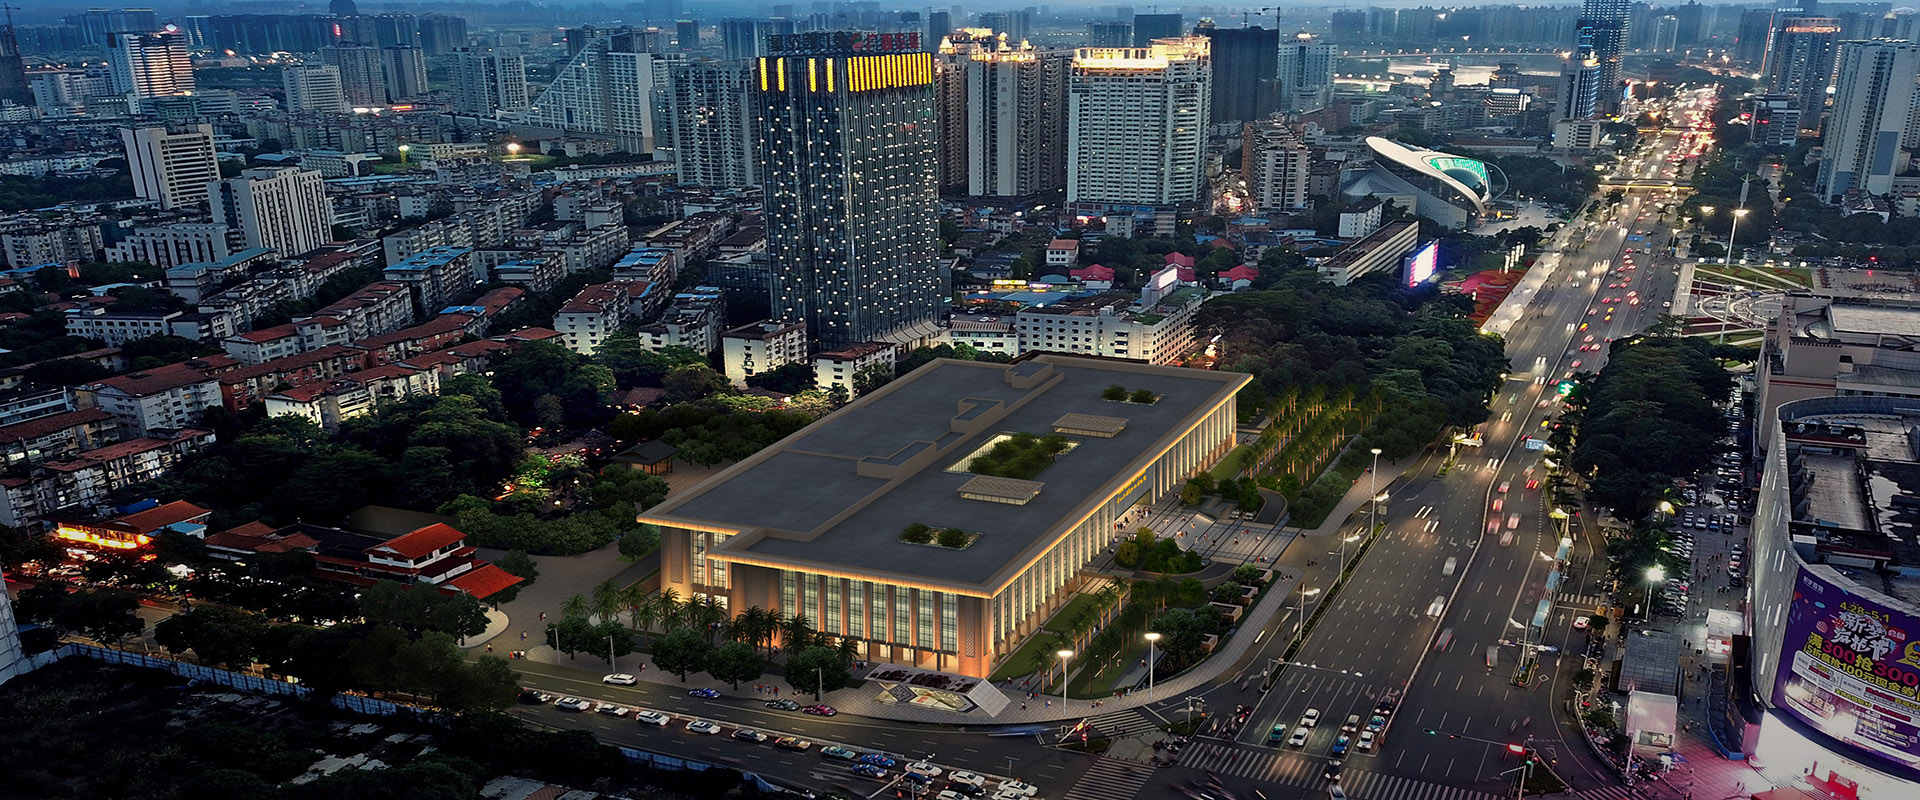 广西壮族自治区博物馆改扩建项目